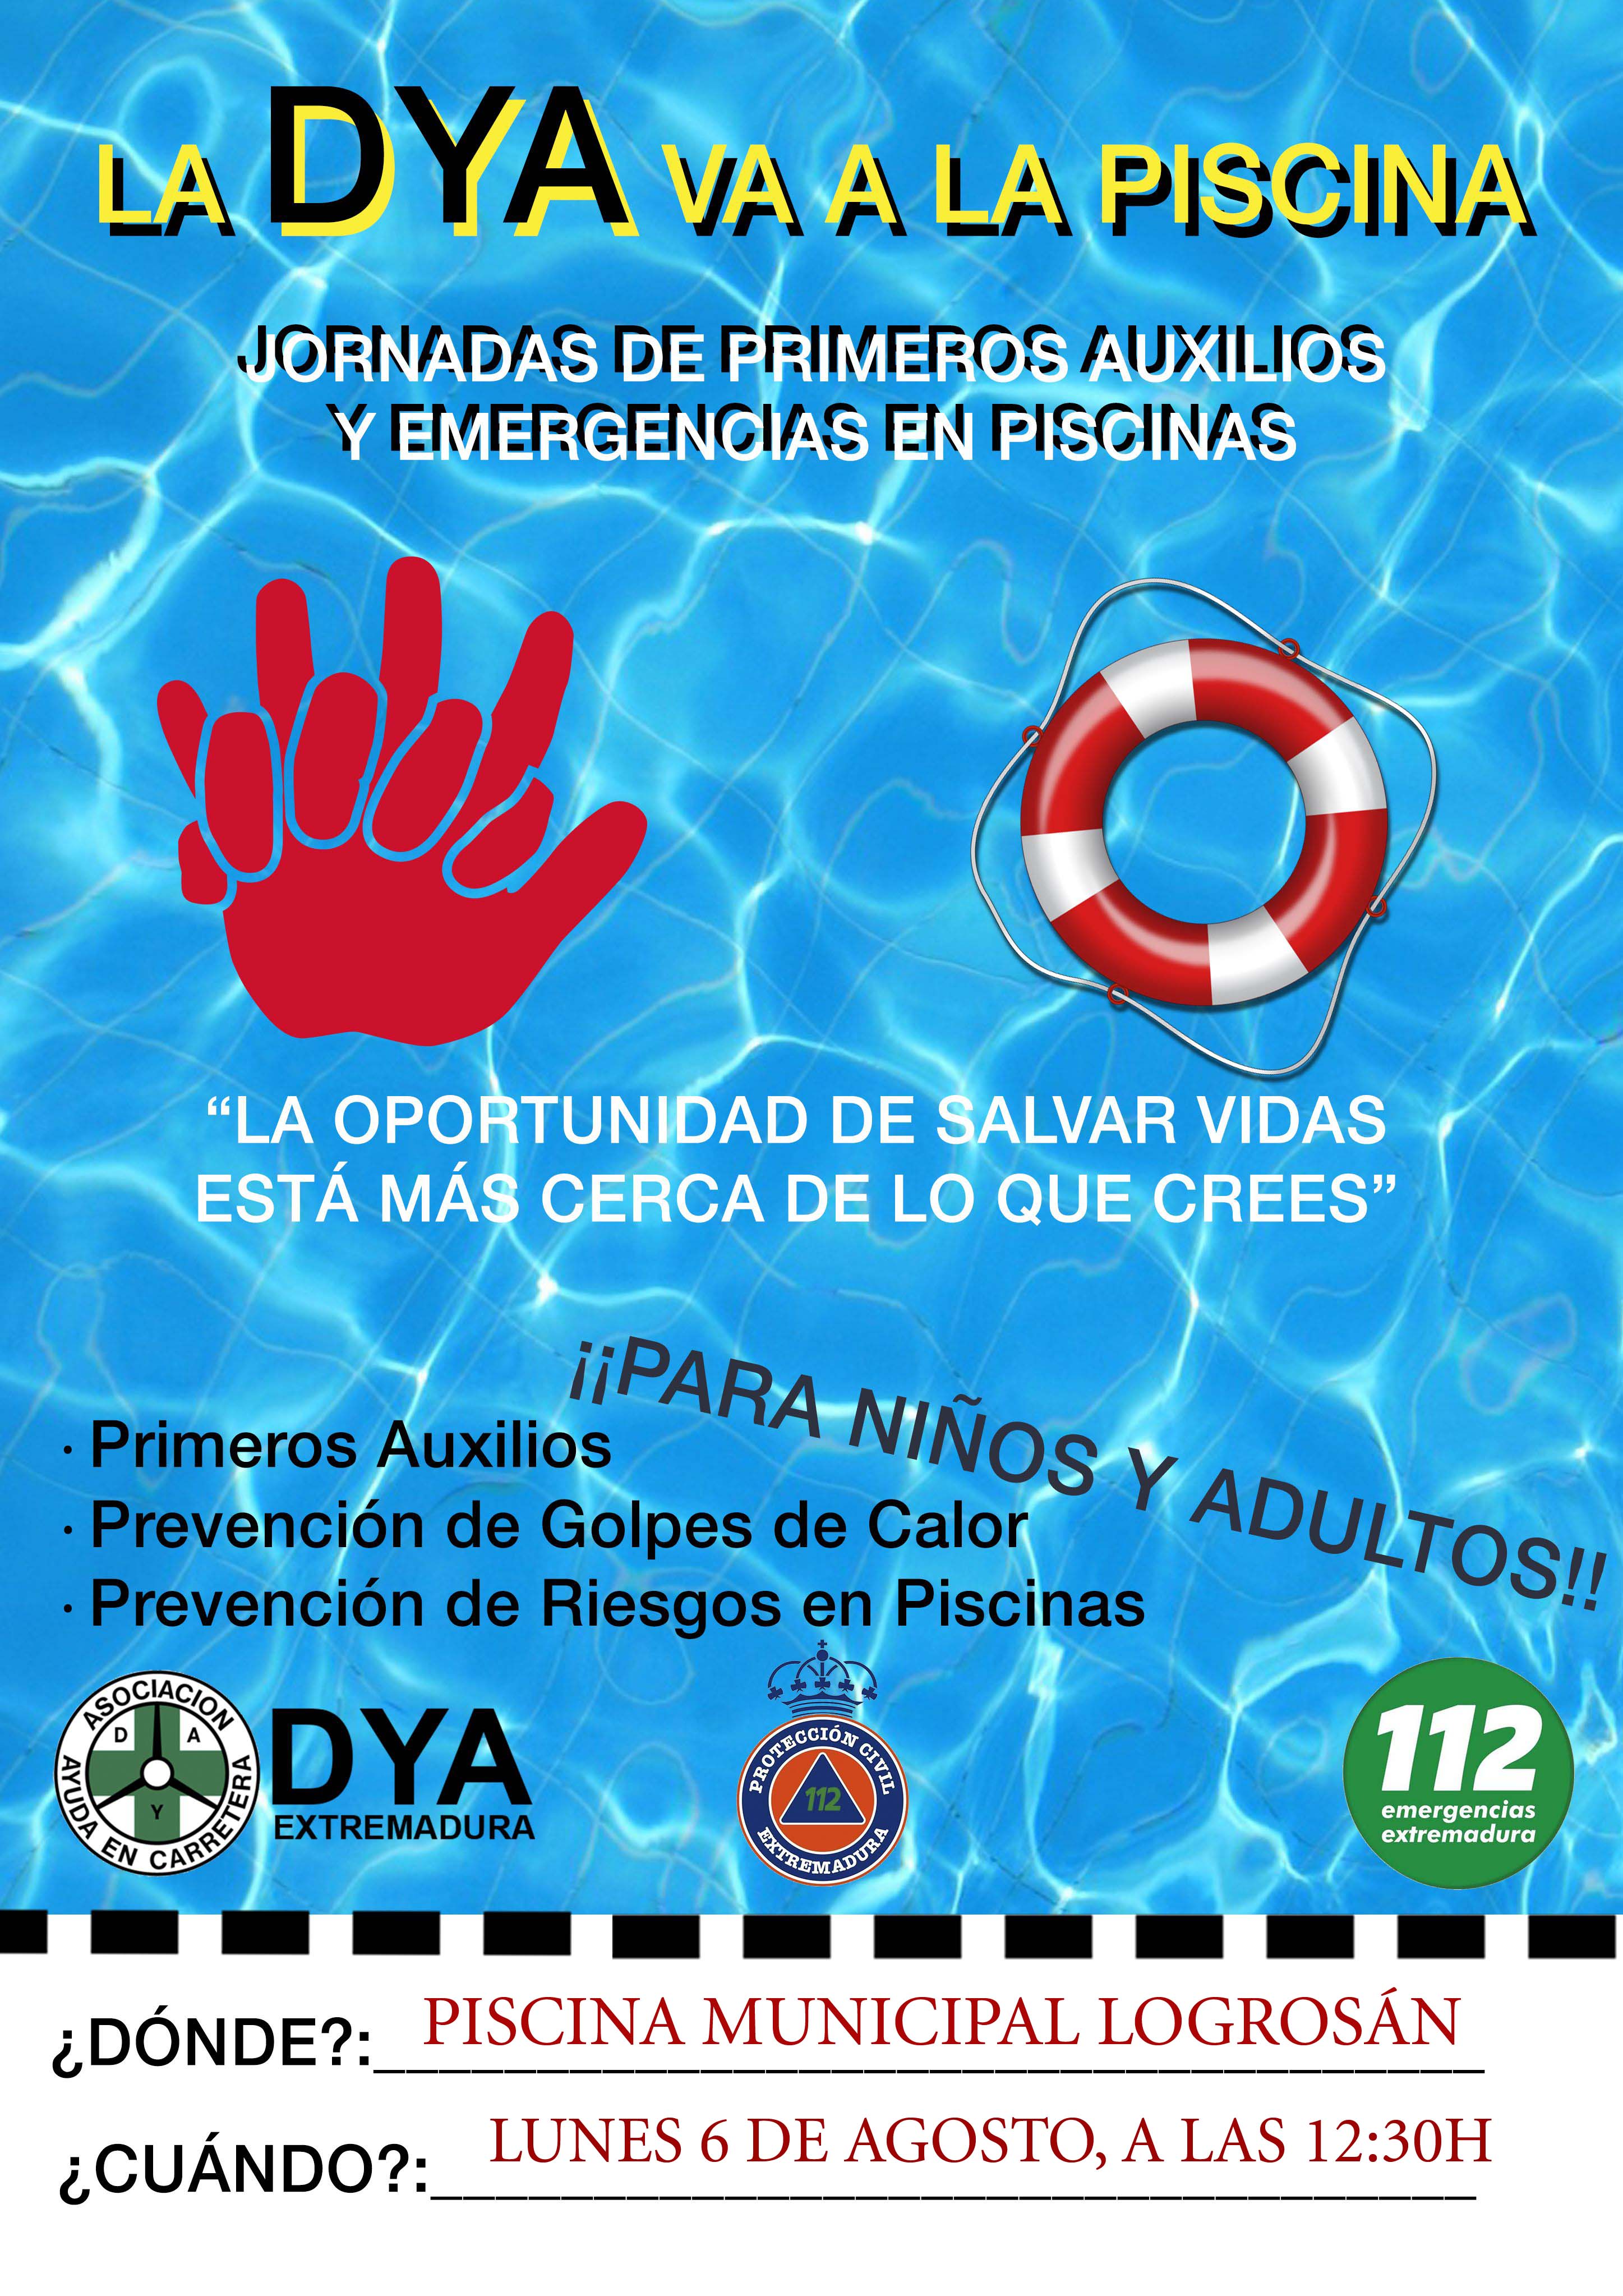 Jornadas de primeros auxilios y emergencias en piscinas 2018 - Logrosán